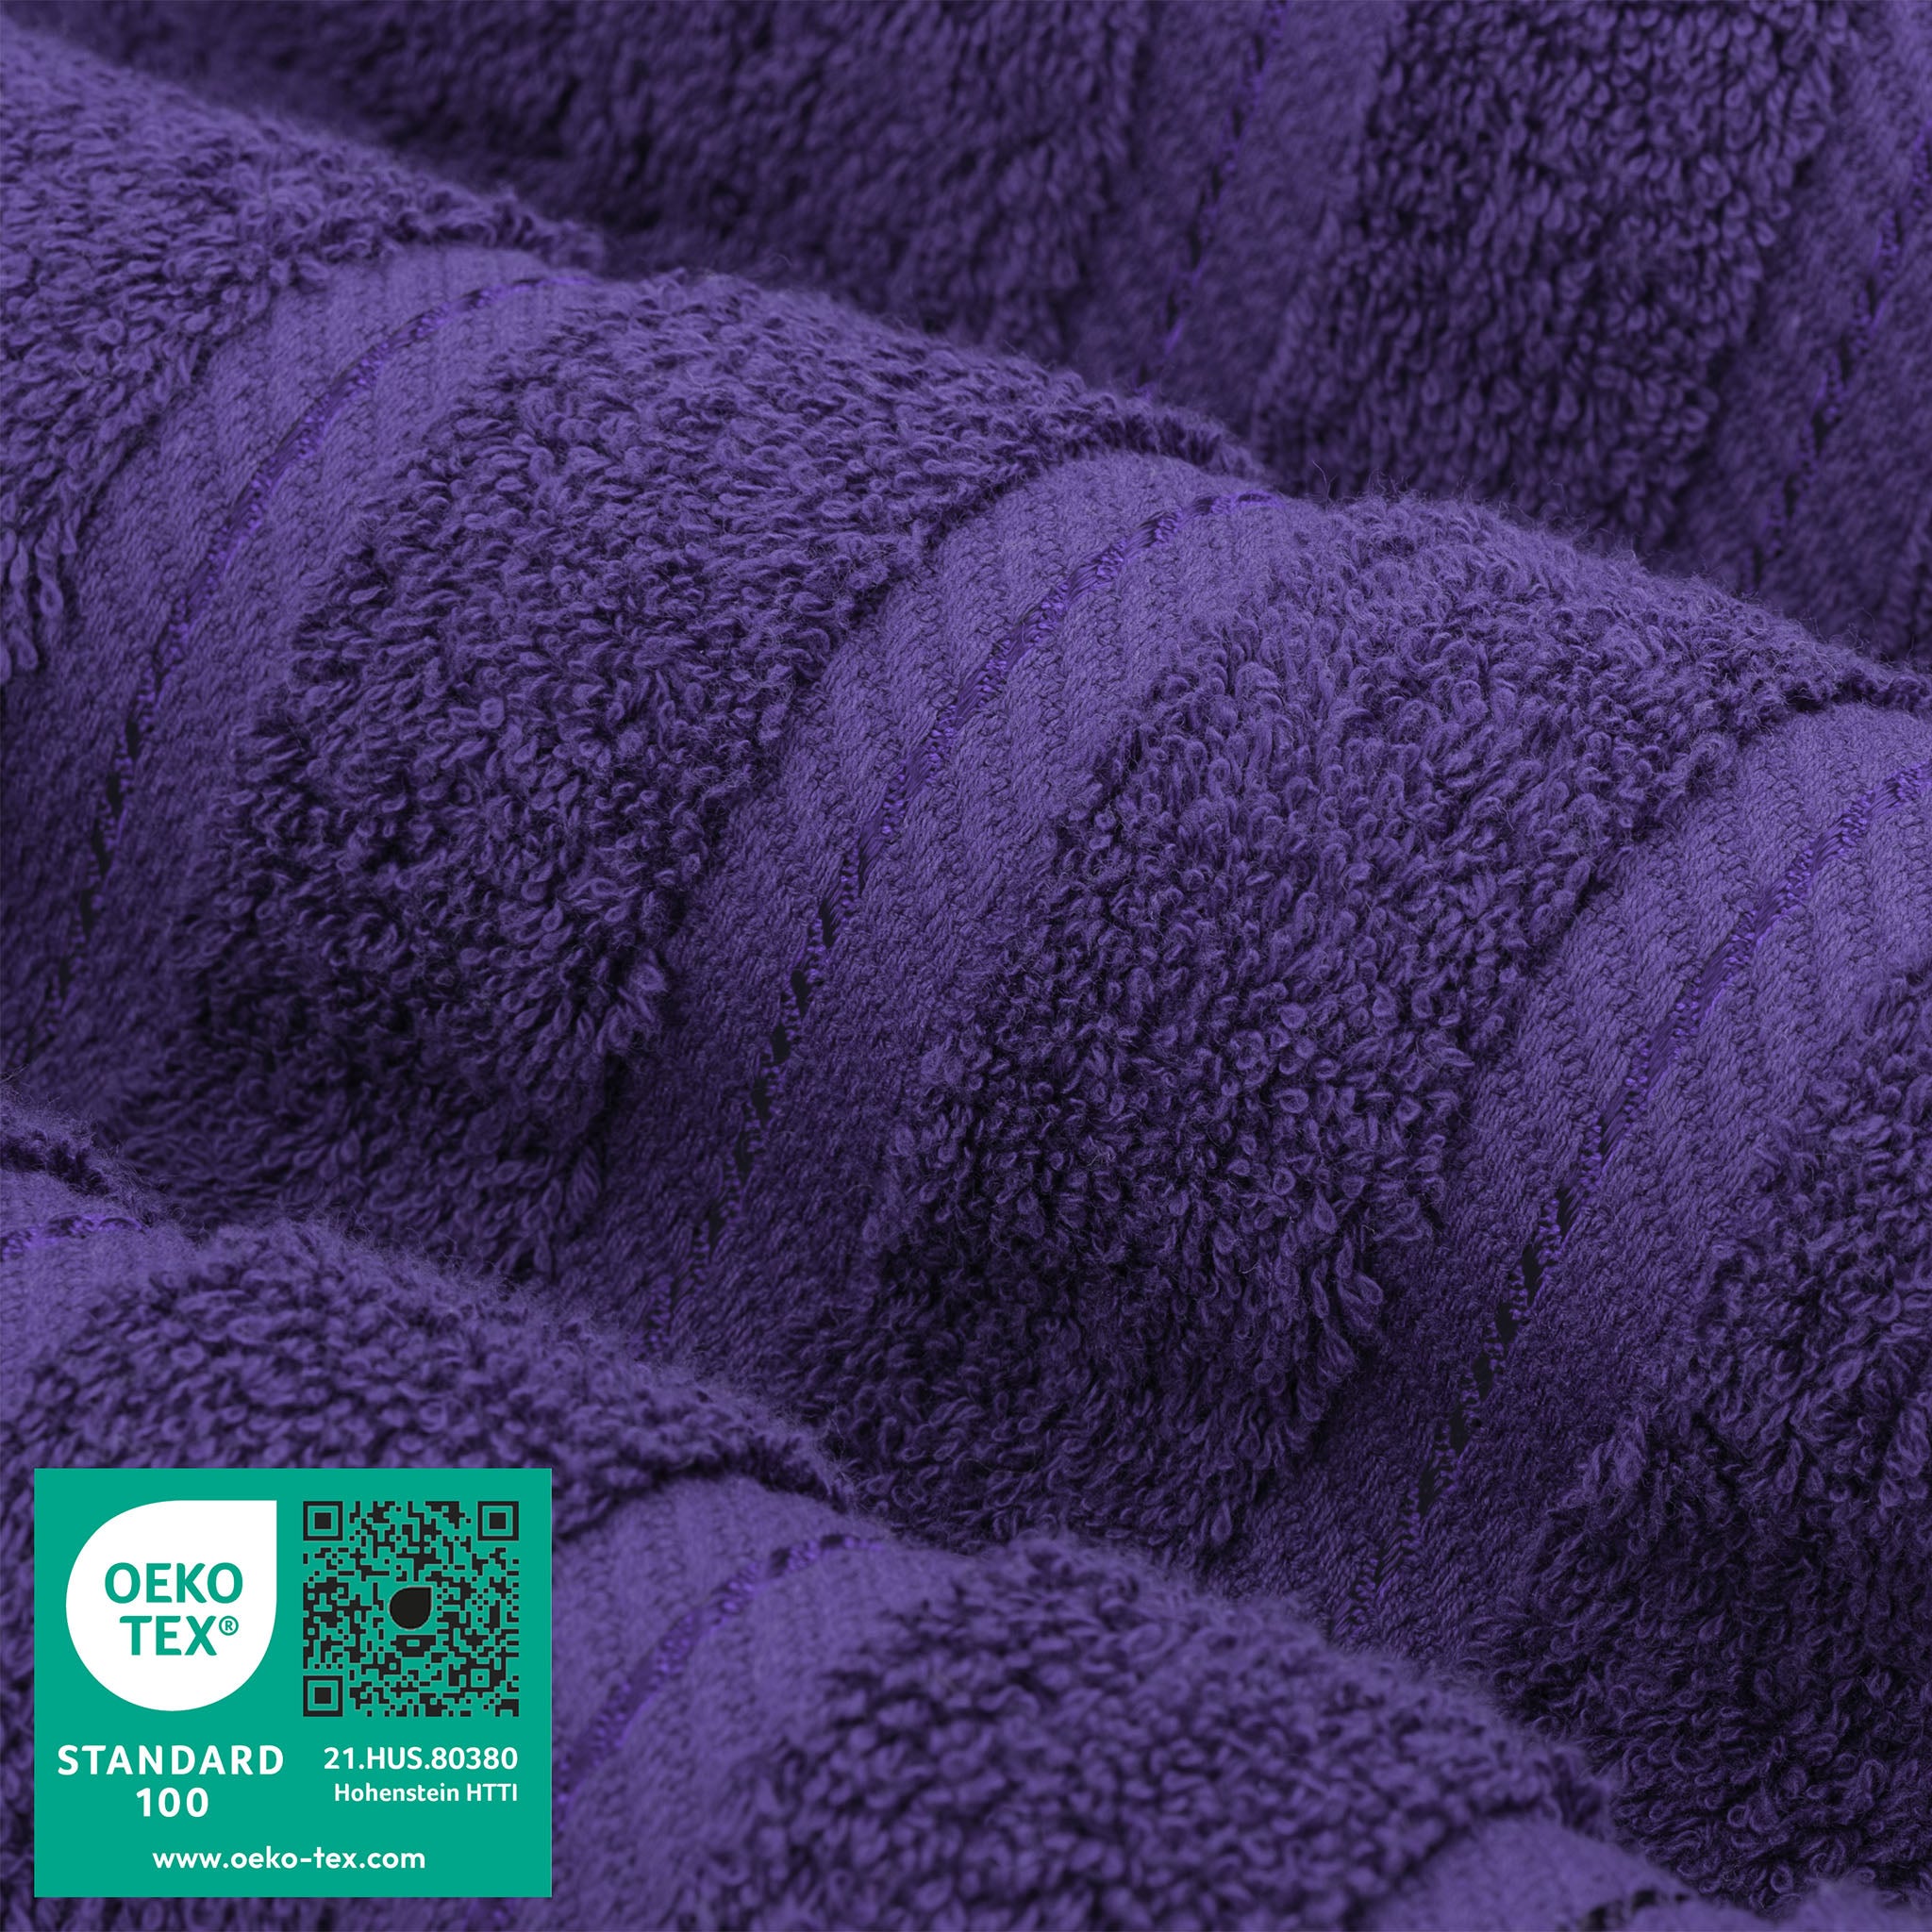 American Soft Linen 100% Turkish Cotton 6 Piece Towel Set Wholesale purple-3